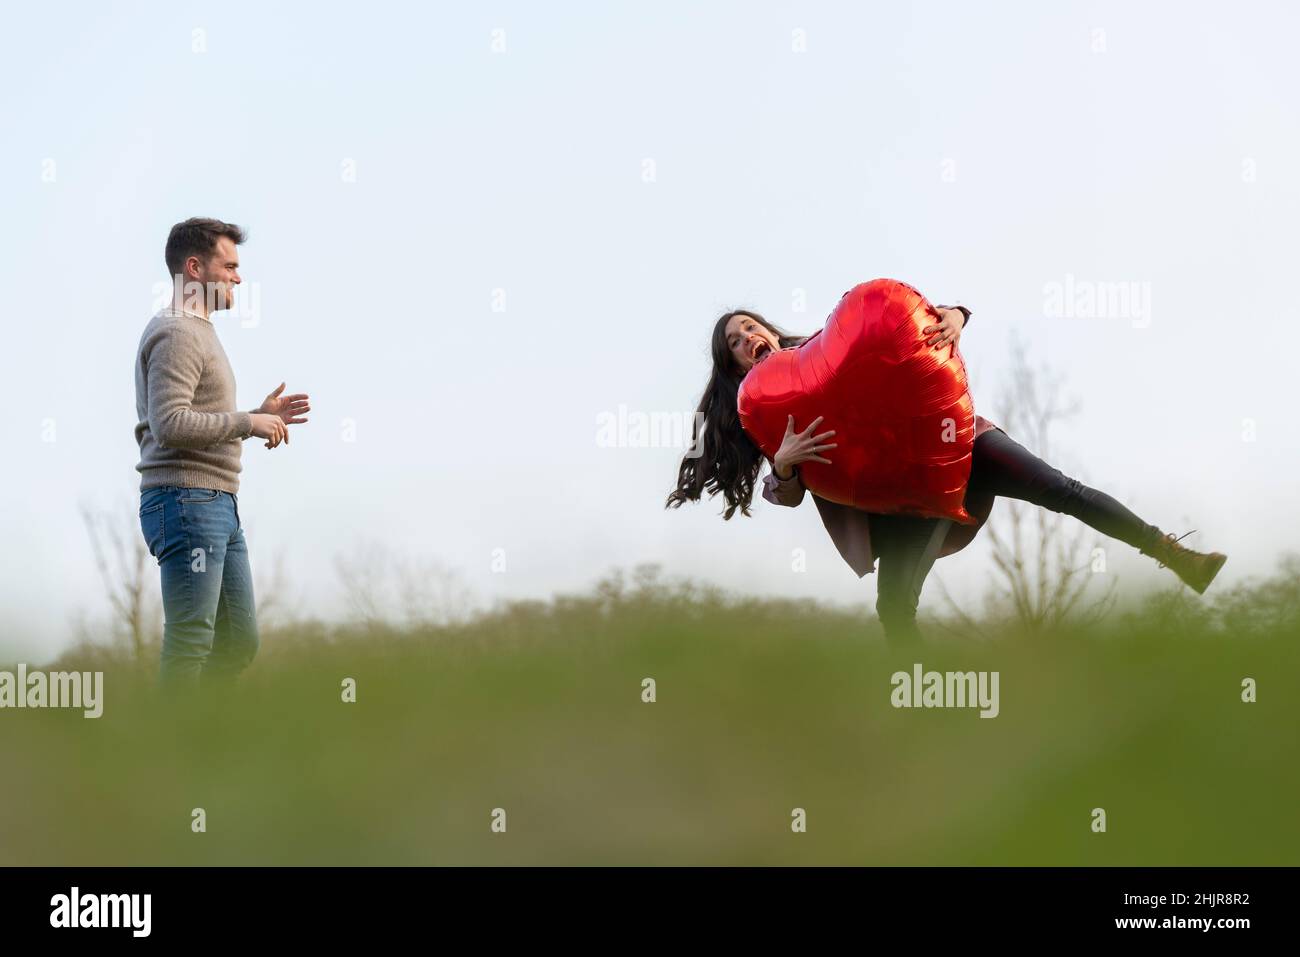 Jeune couple célébrant le jour de la Saint-Valentin jouant avec un ballon en forme de cœur Banque D'Images